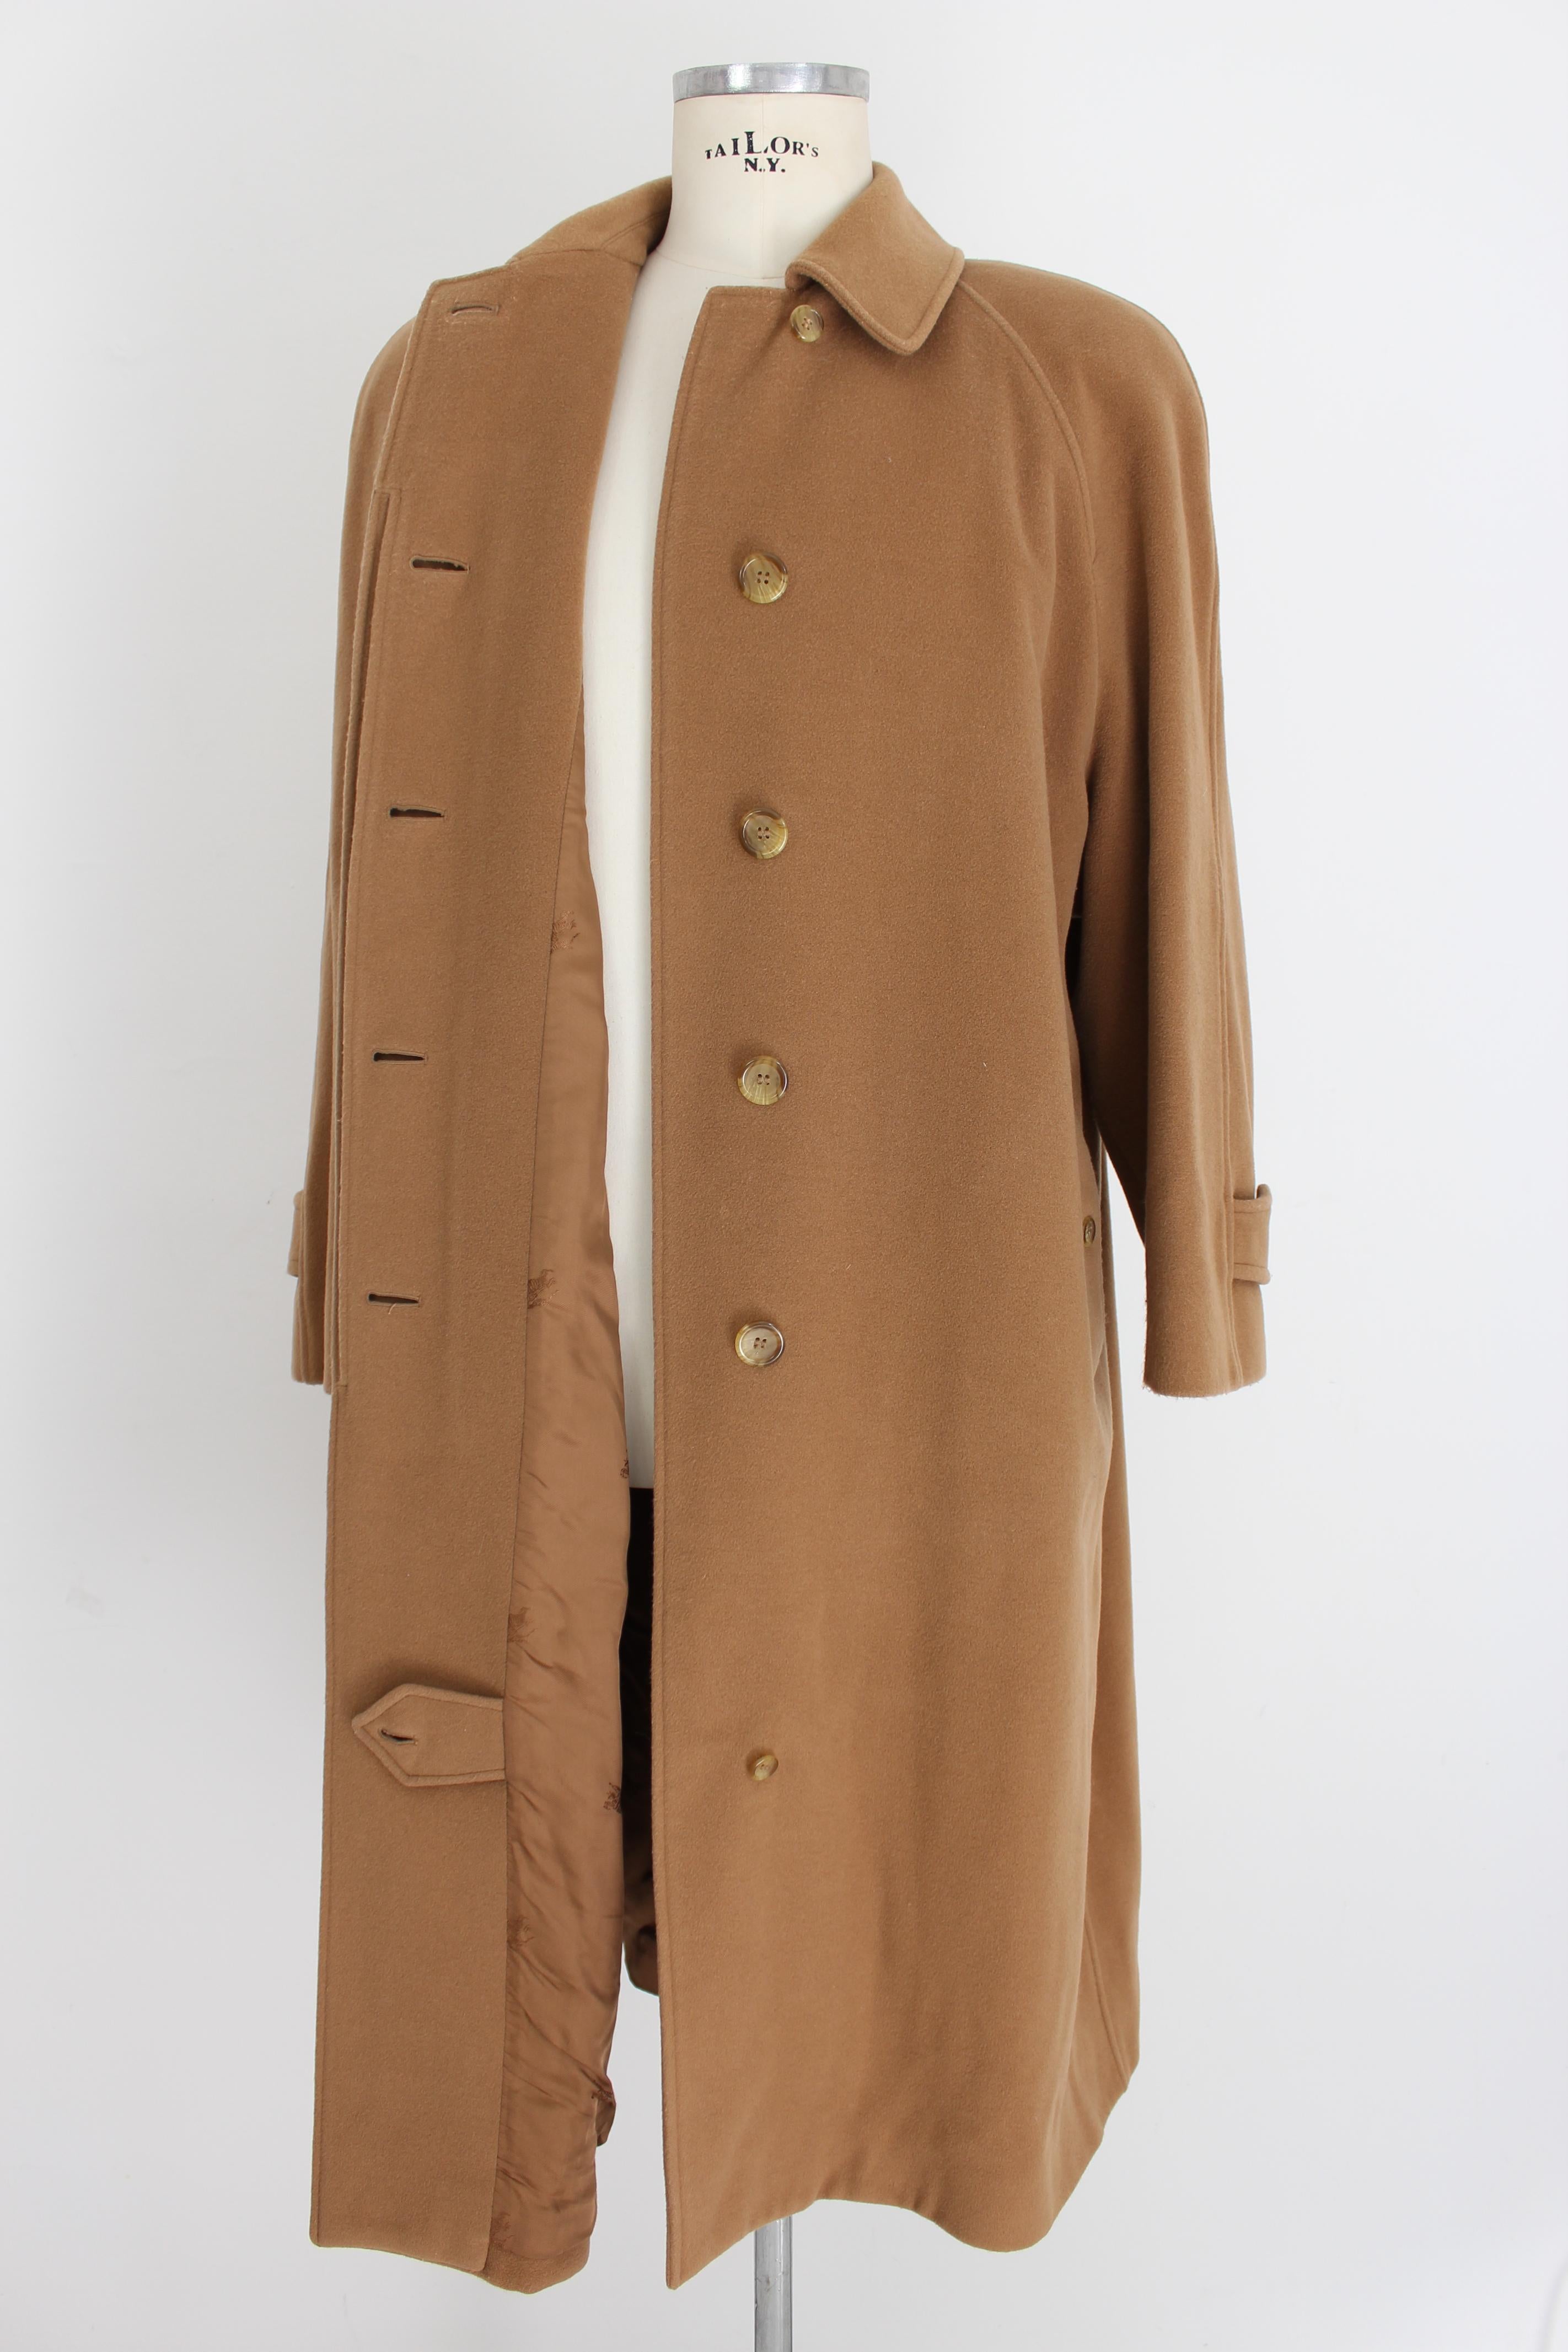 burberry wool coat beige